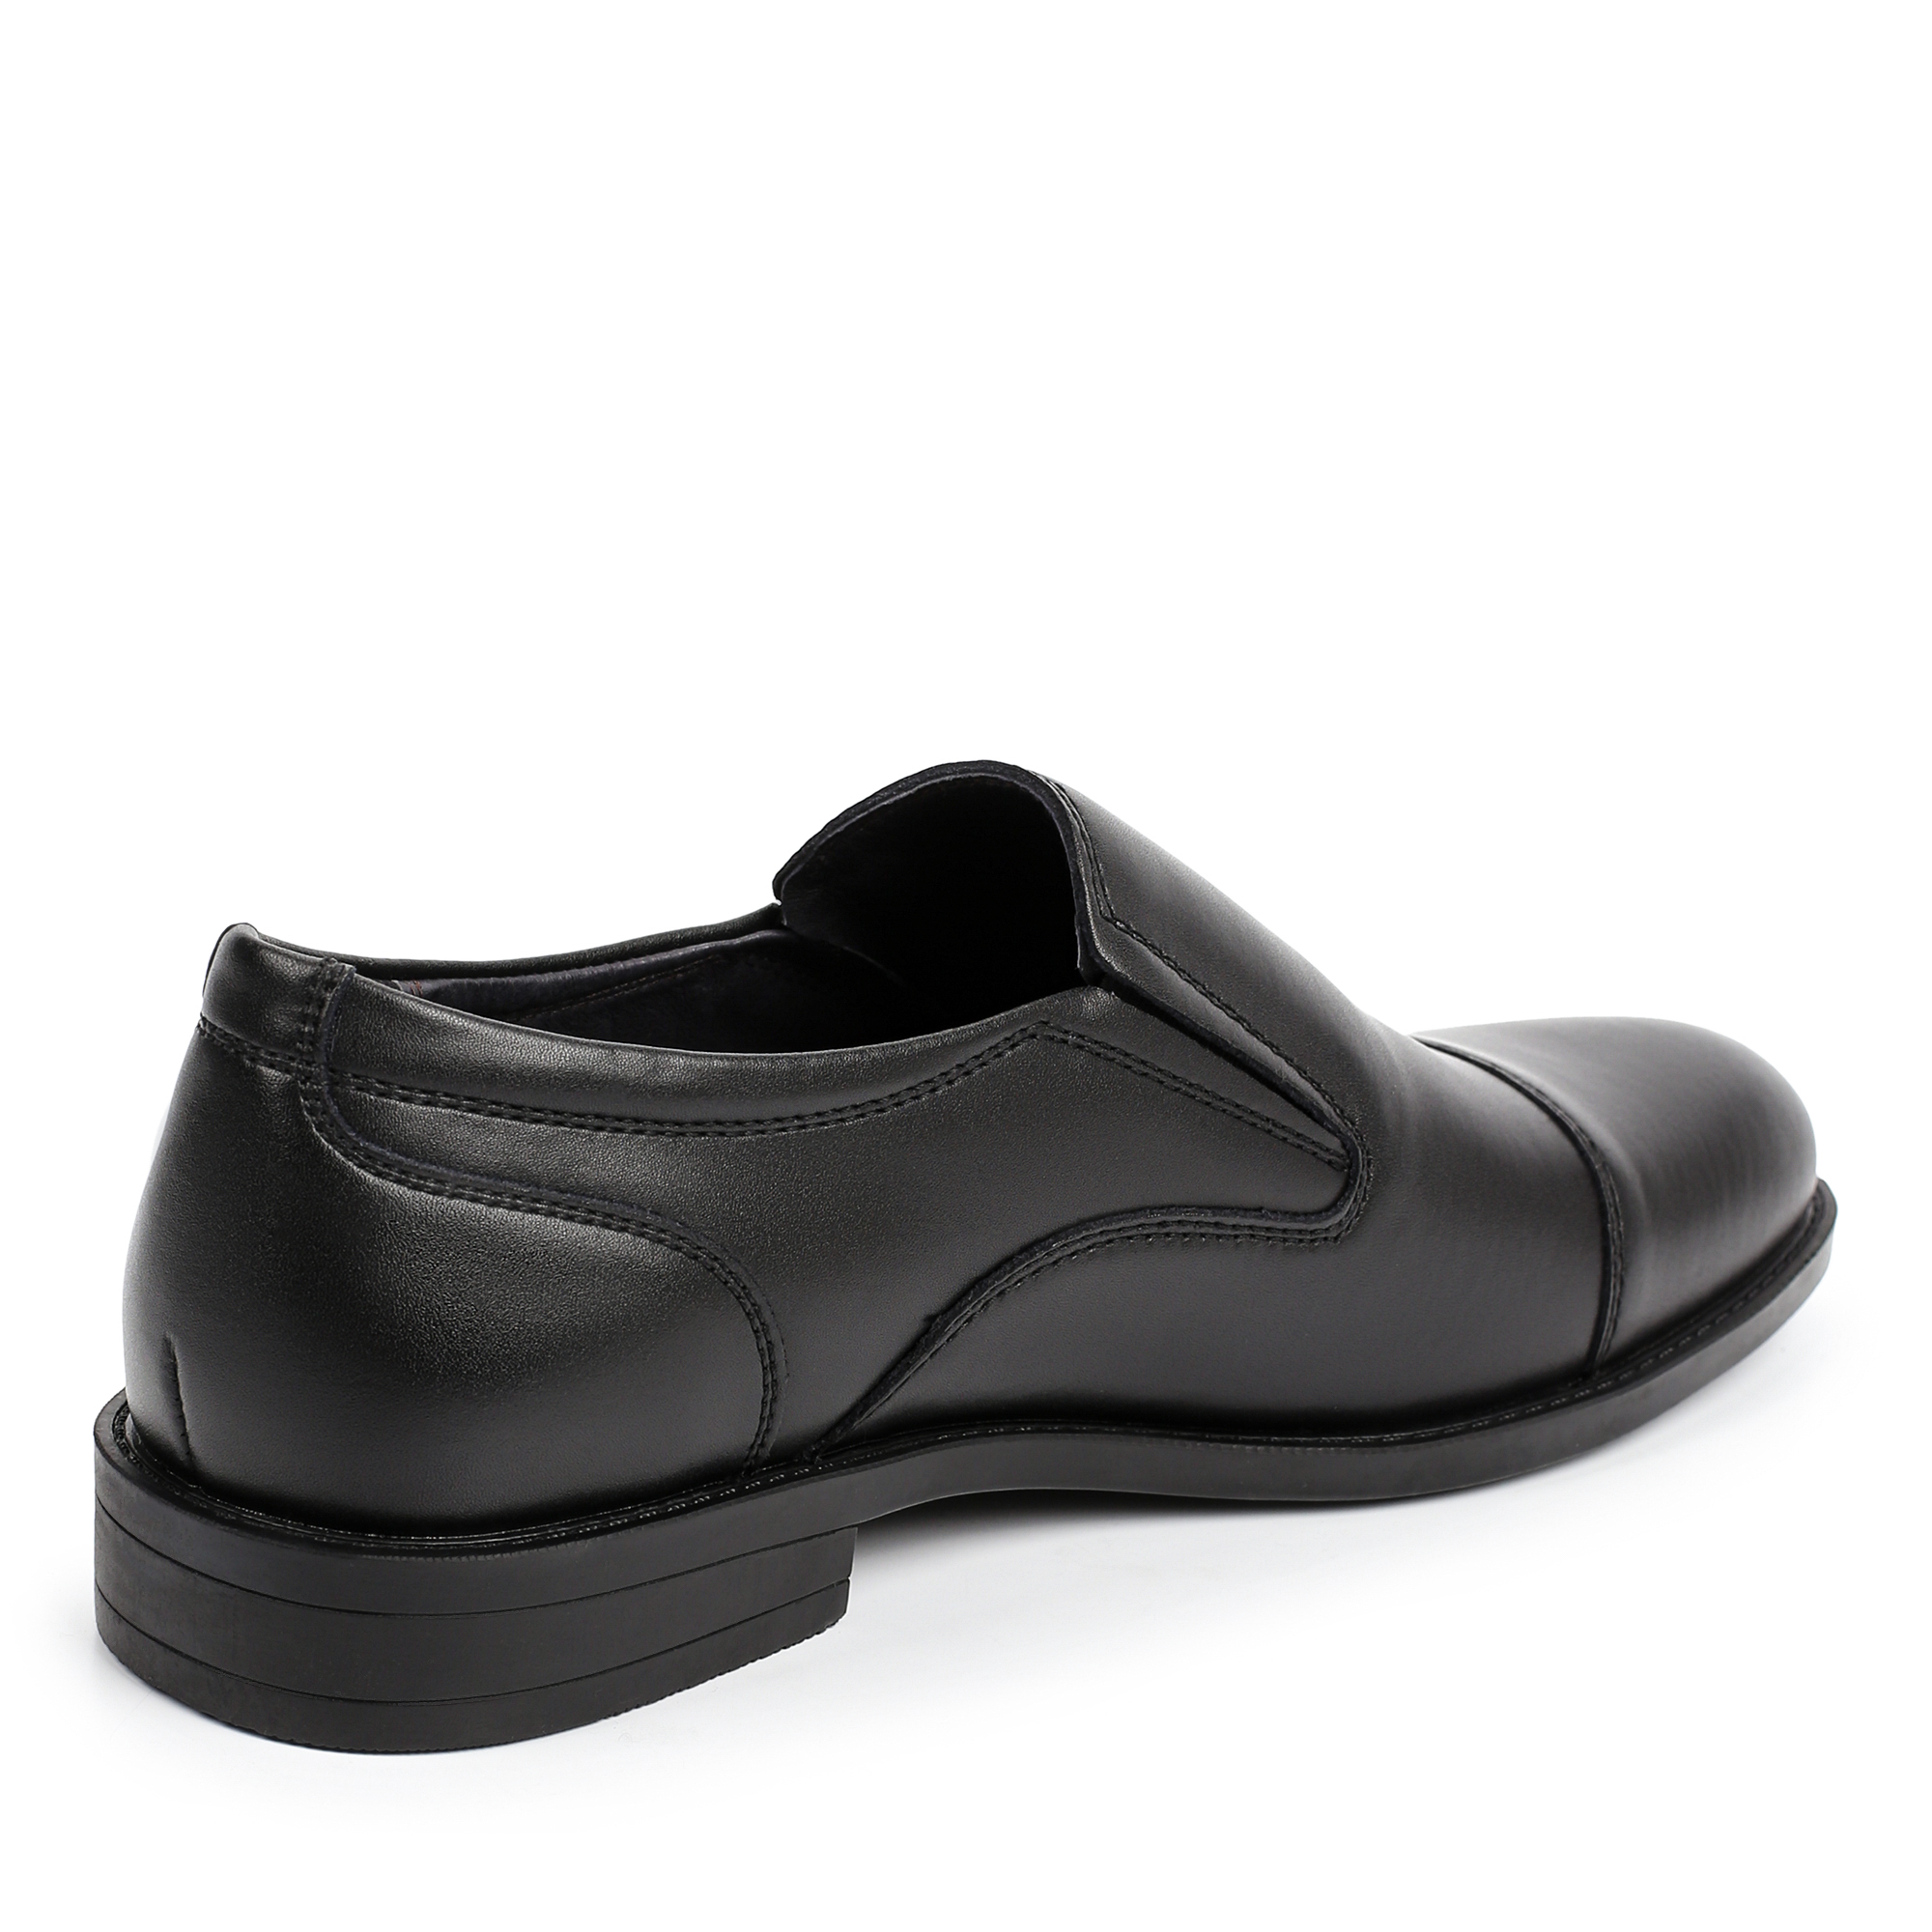 Туфли/полуботинки Thomas Munz 058-231A-1602, цвет черный, размер 40 - фото 3